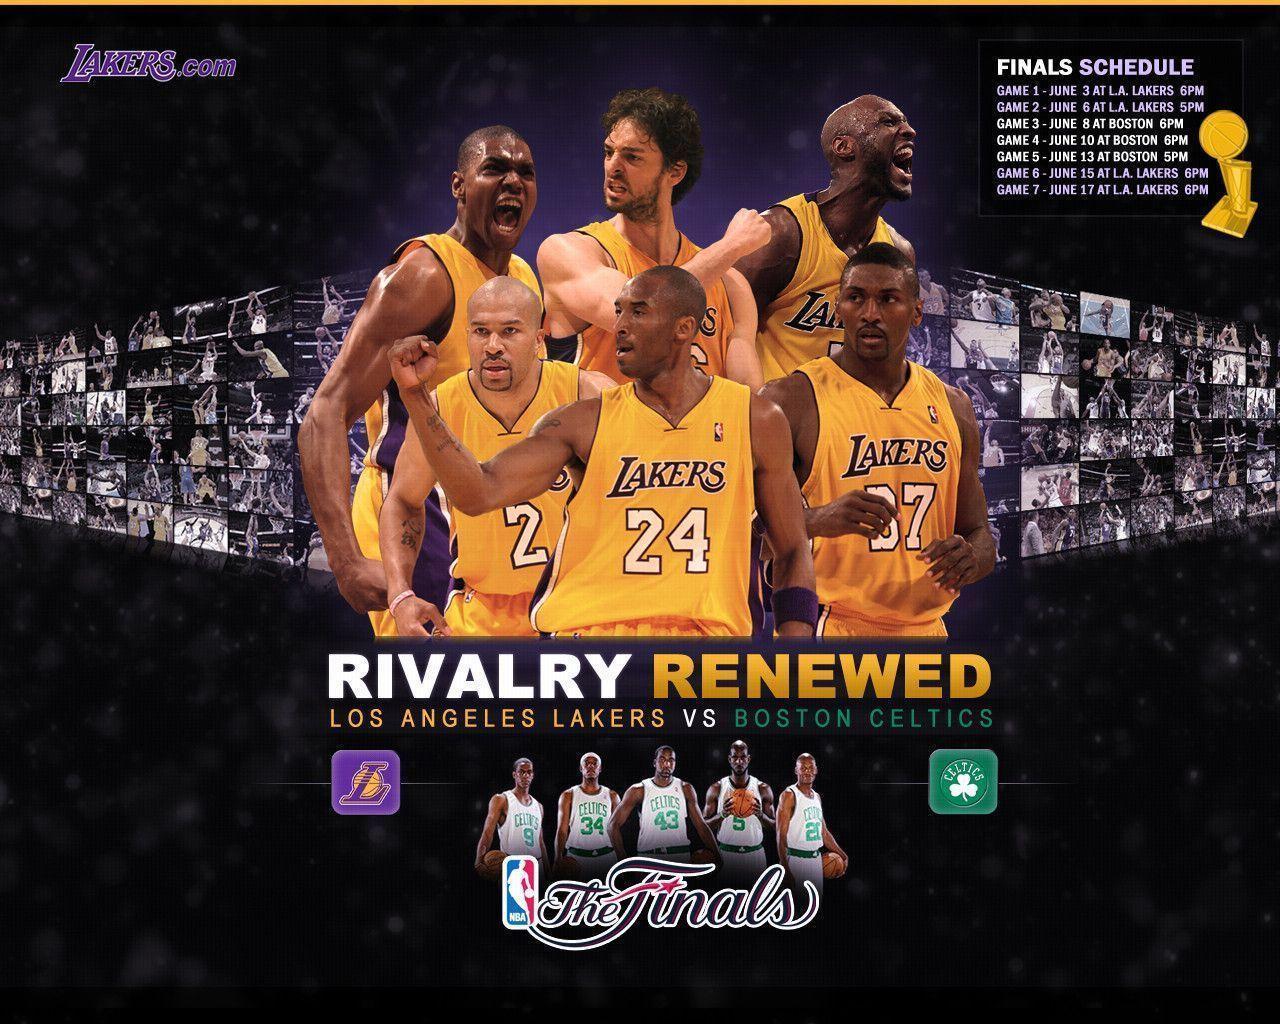 Lakers Desktop Wallpapers 2009